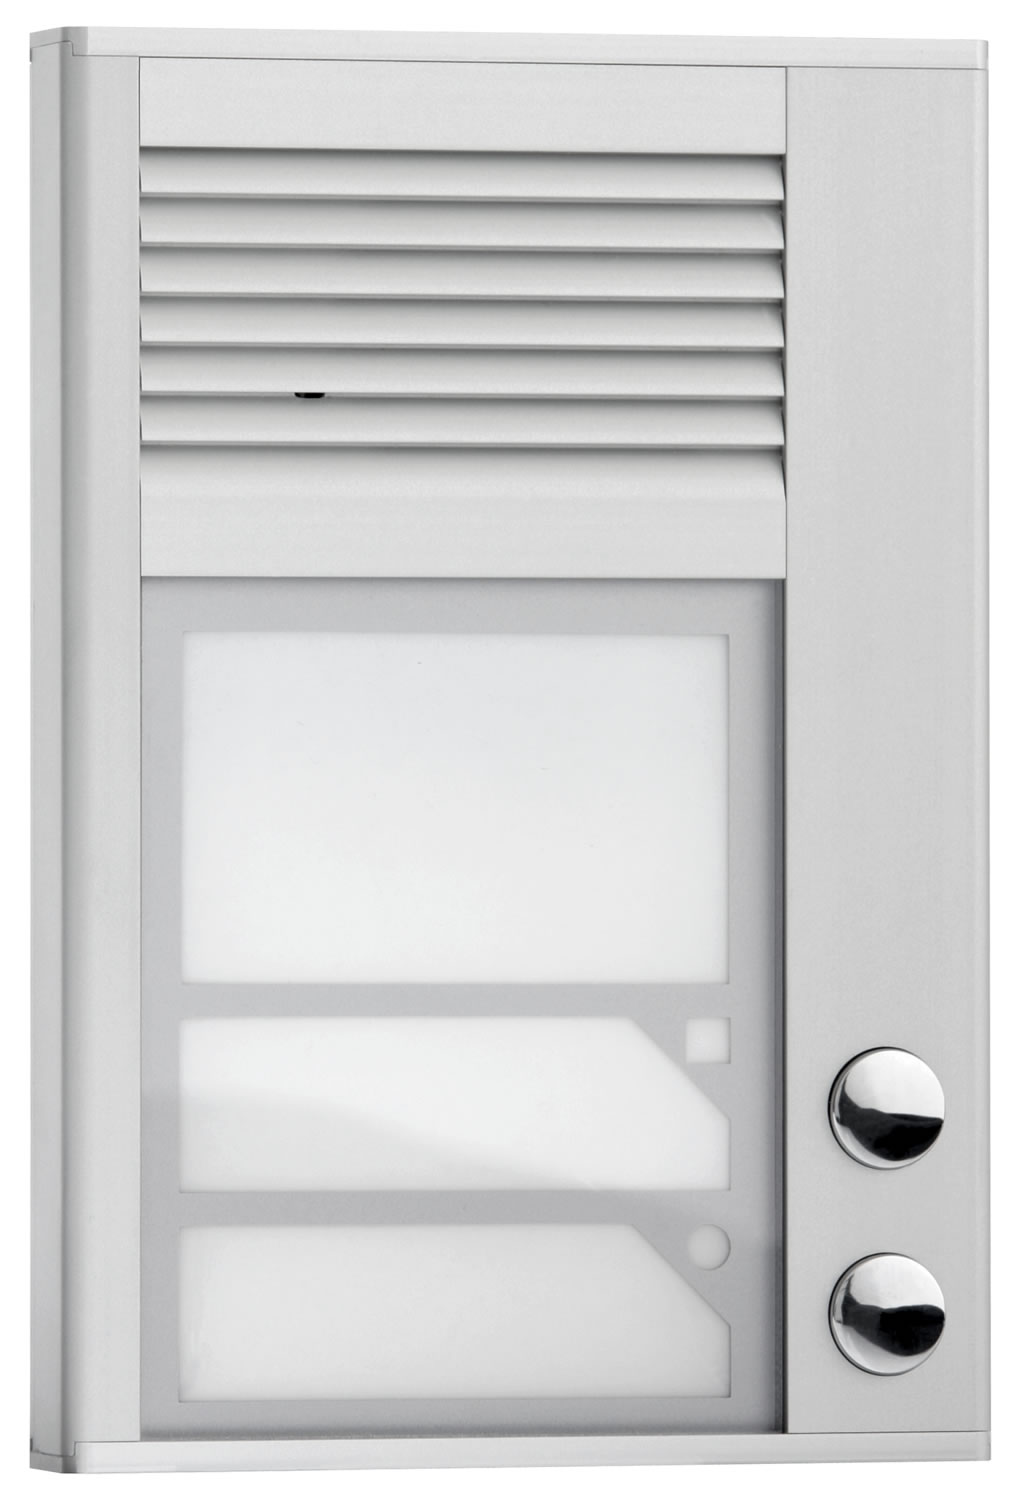 Interqurtz Door Entry - Door Phone 2 Button ID202